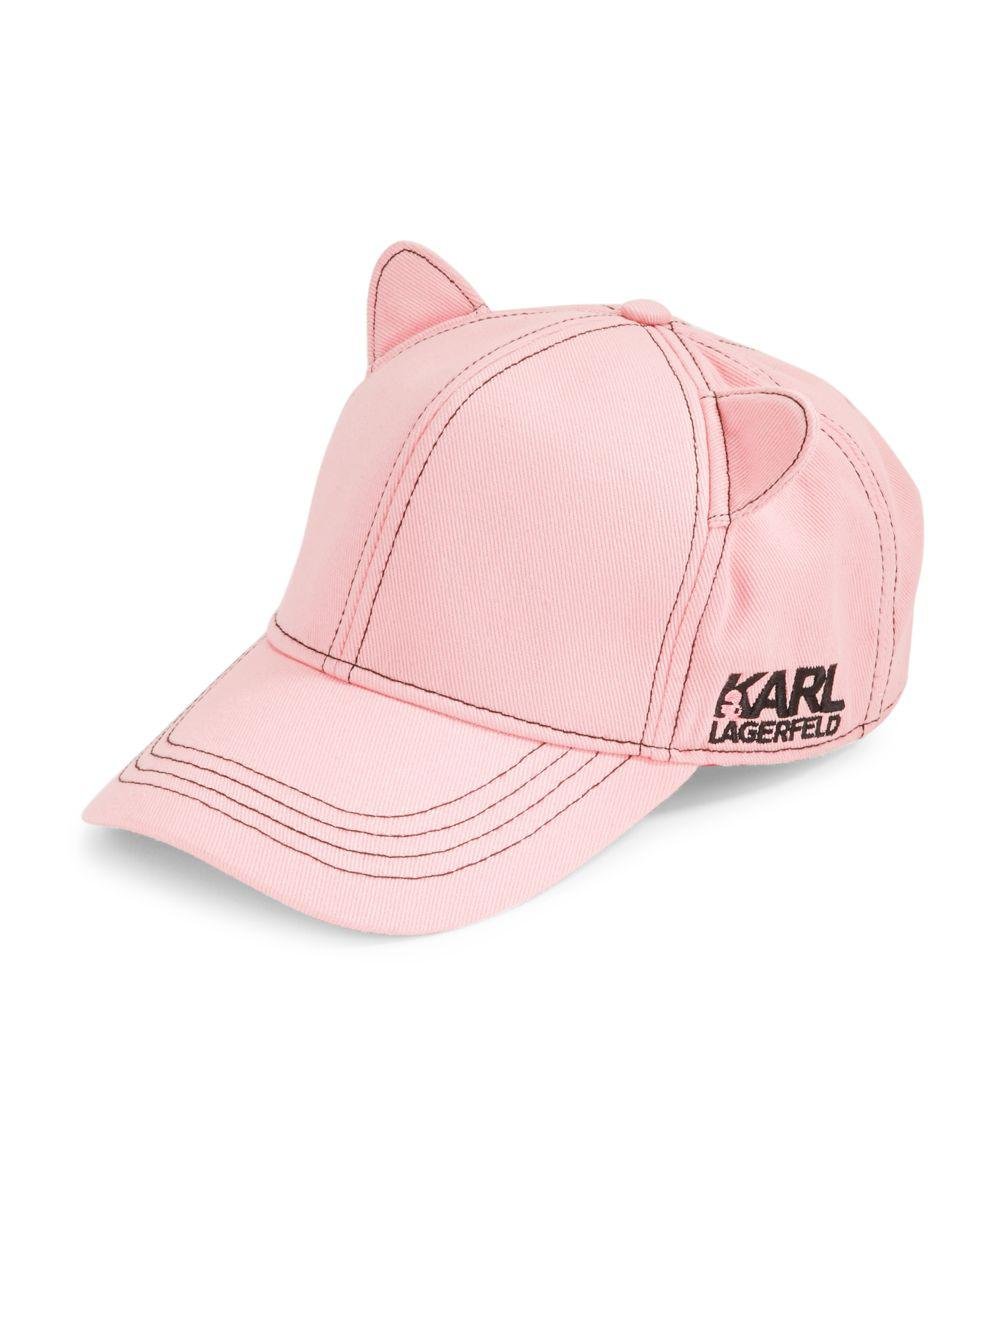 Karl Lagerfeld Cat Ears Baseball Hat in Pink | Lyst